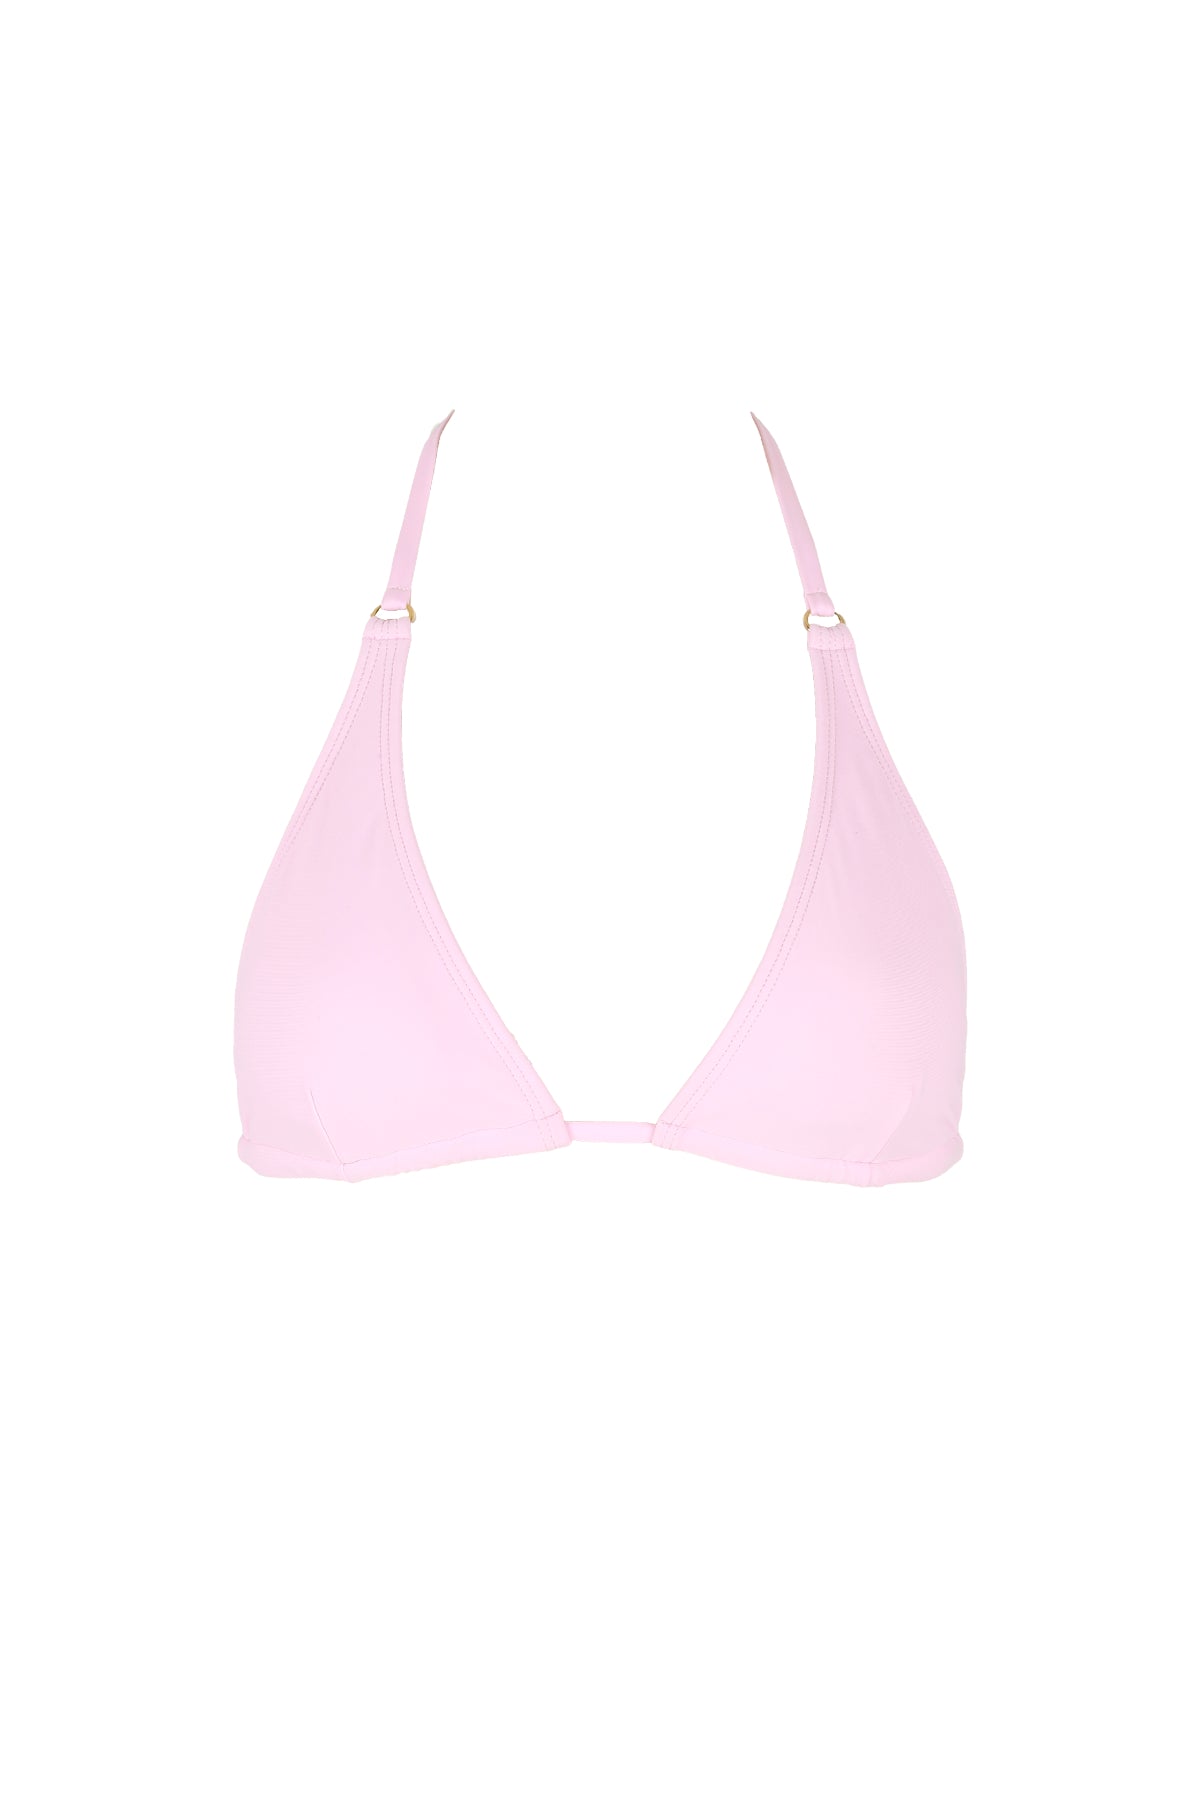 pink triangle top bikini luxury swimwear koraru sustainable swimwear halther bikini top